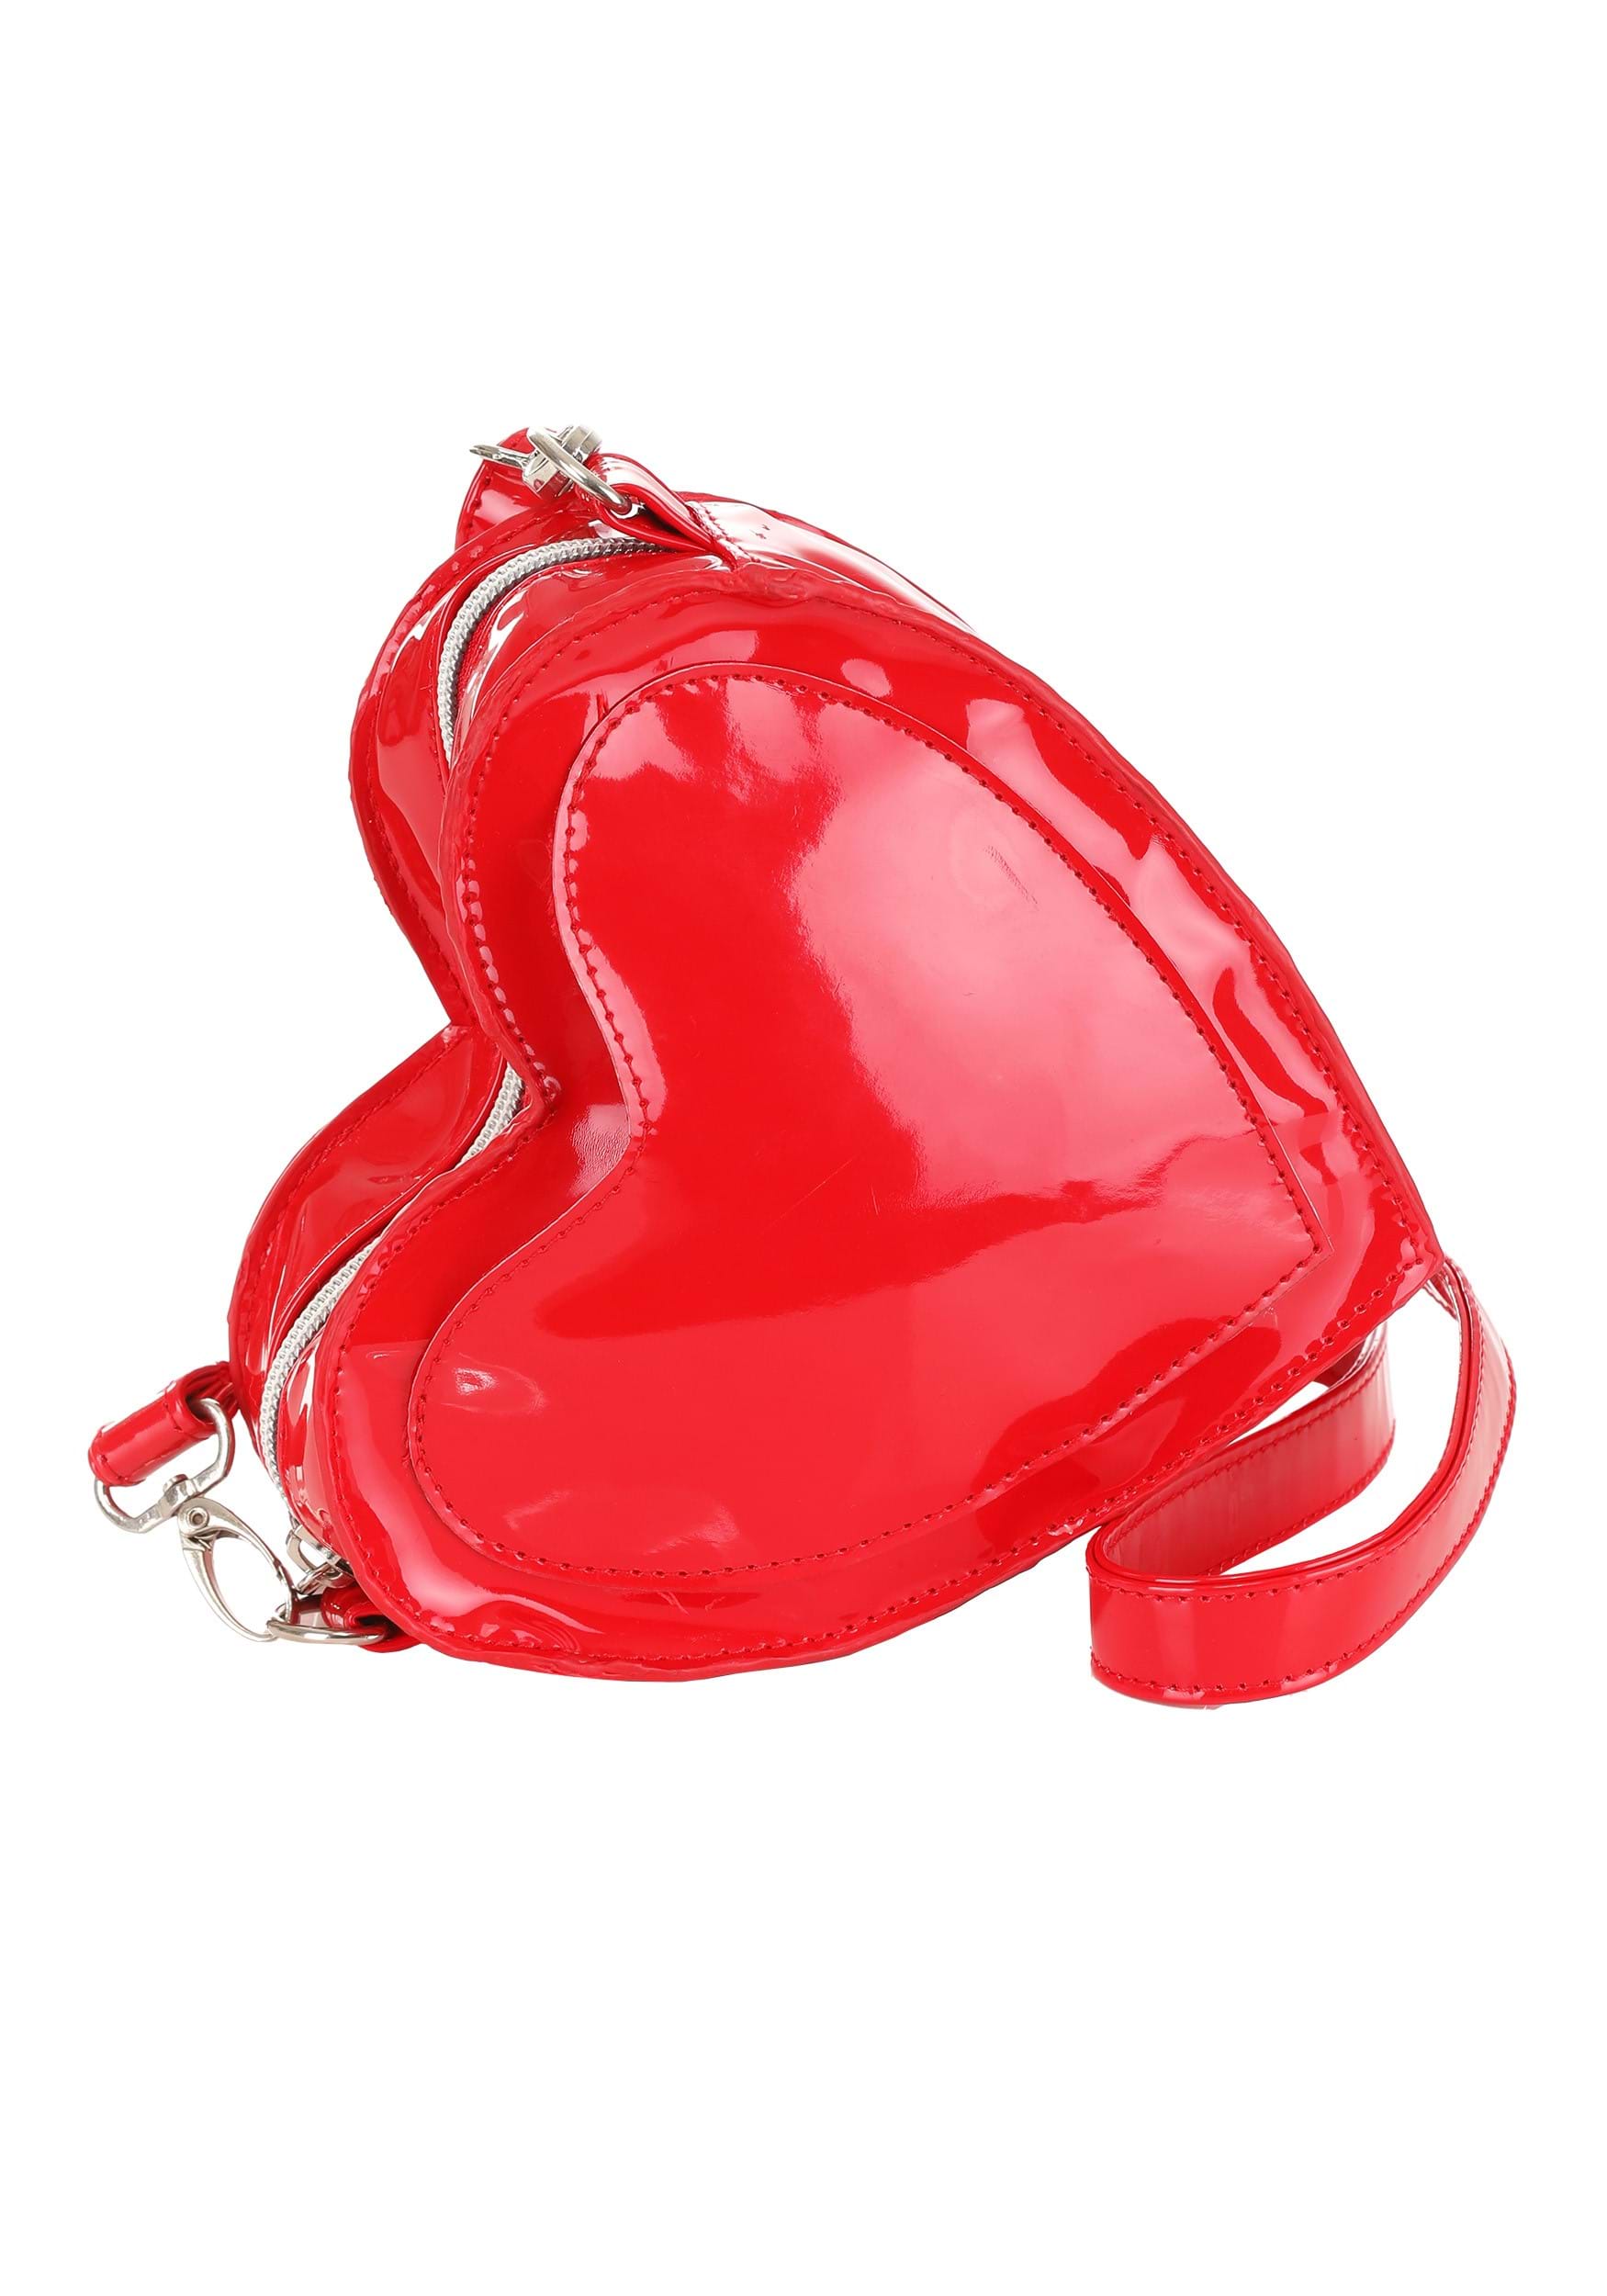 My Valentine Red Heart Purse , Valentine's Day Accessories